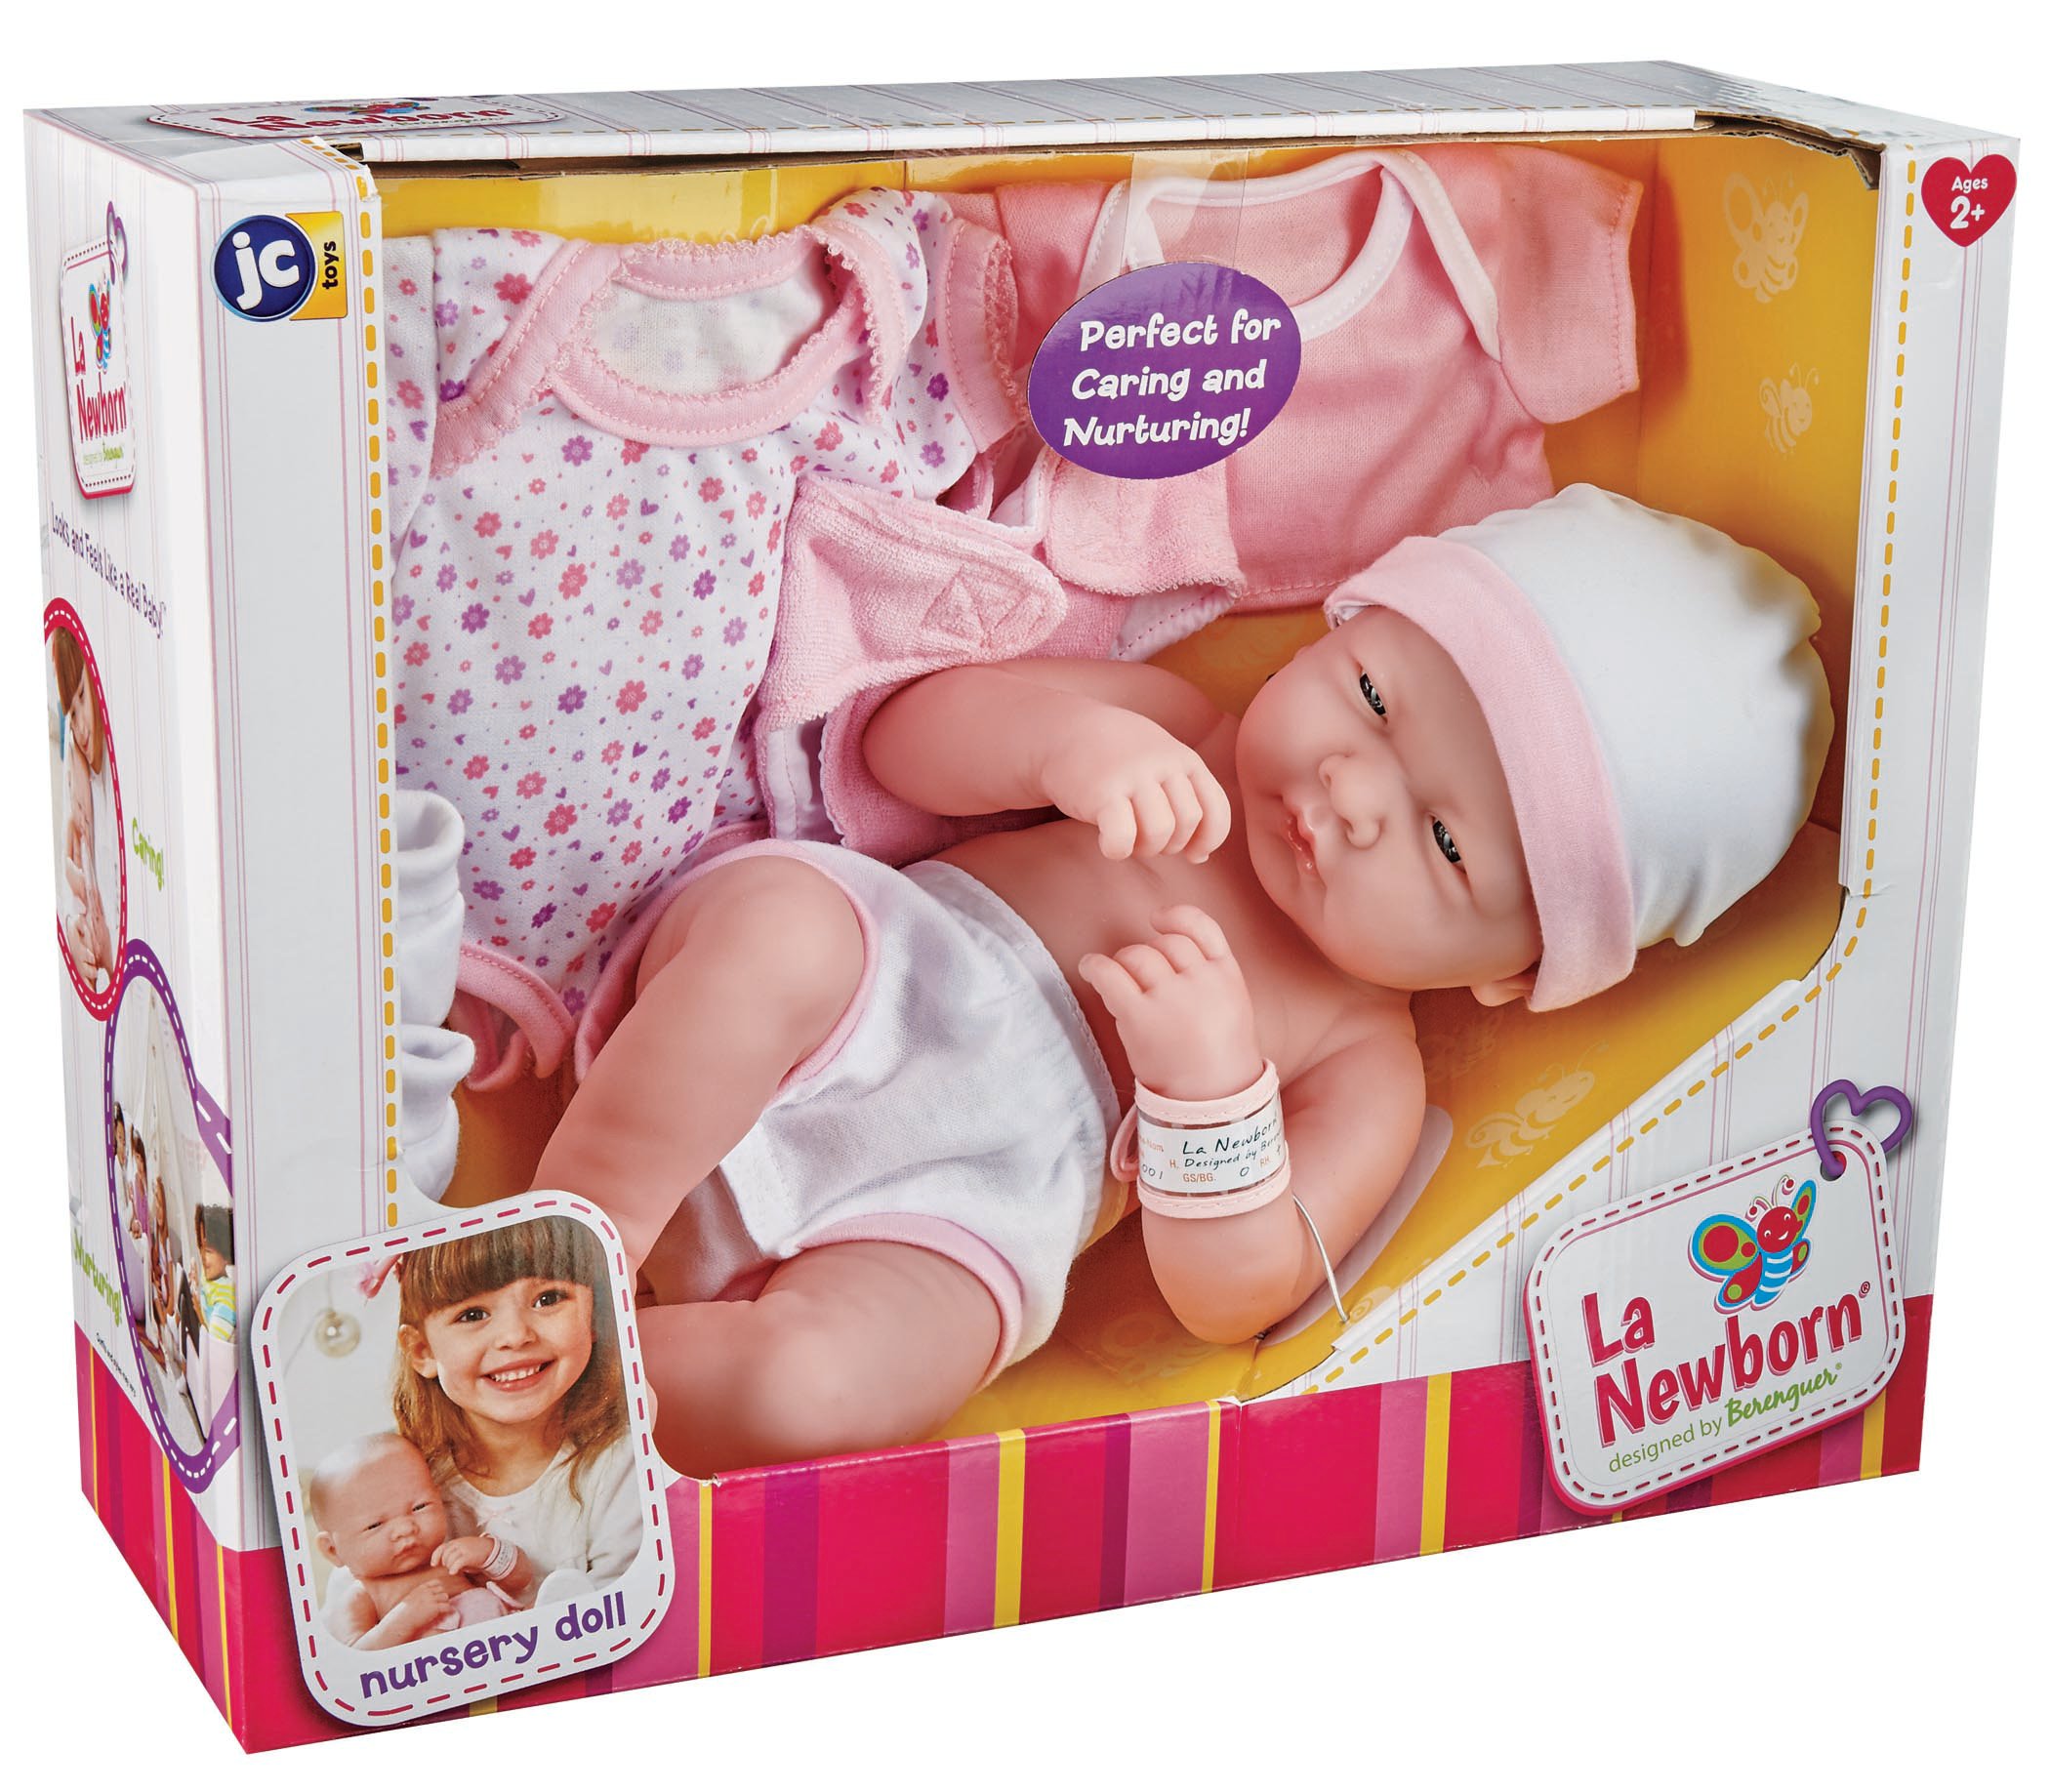 JC Toys La Newborn 14 Baby Doll Gift Set